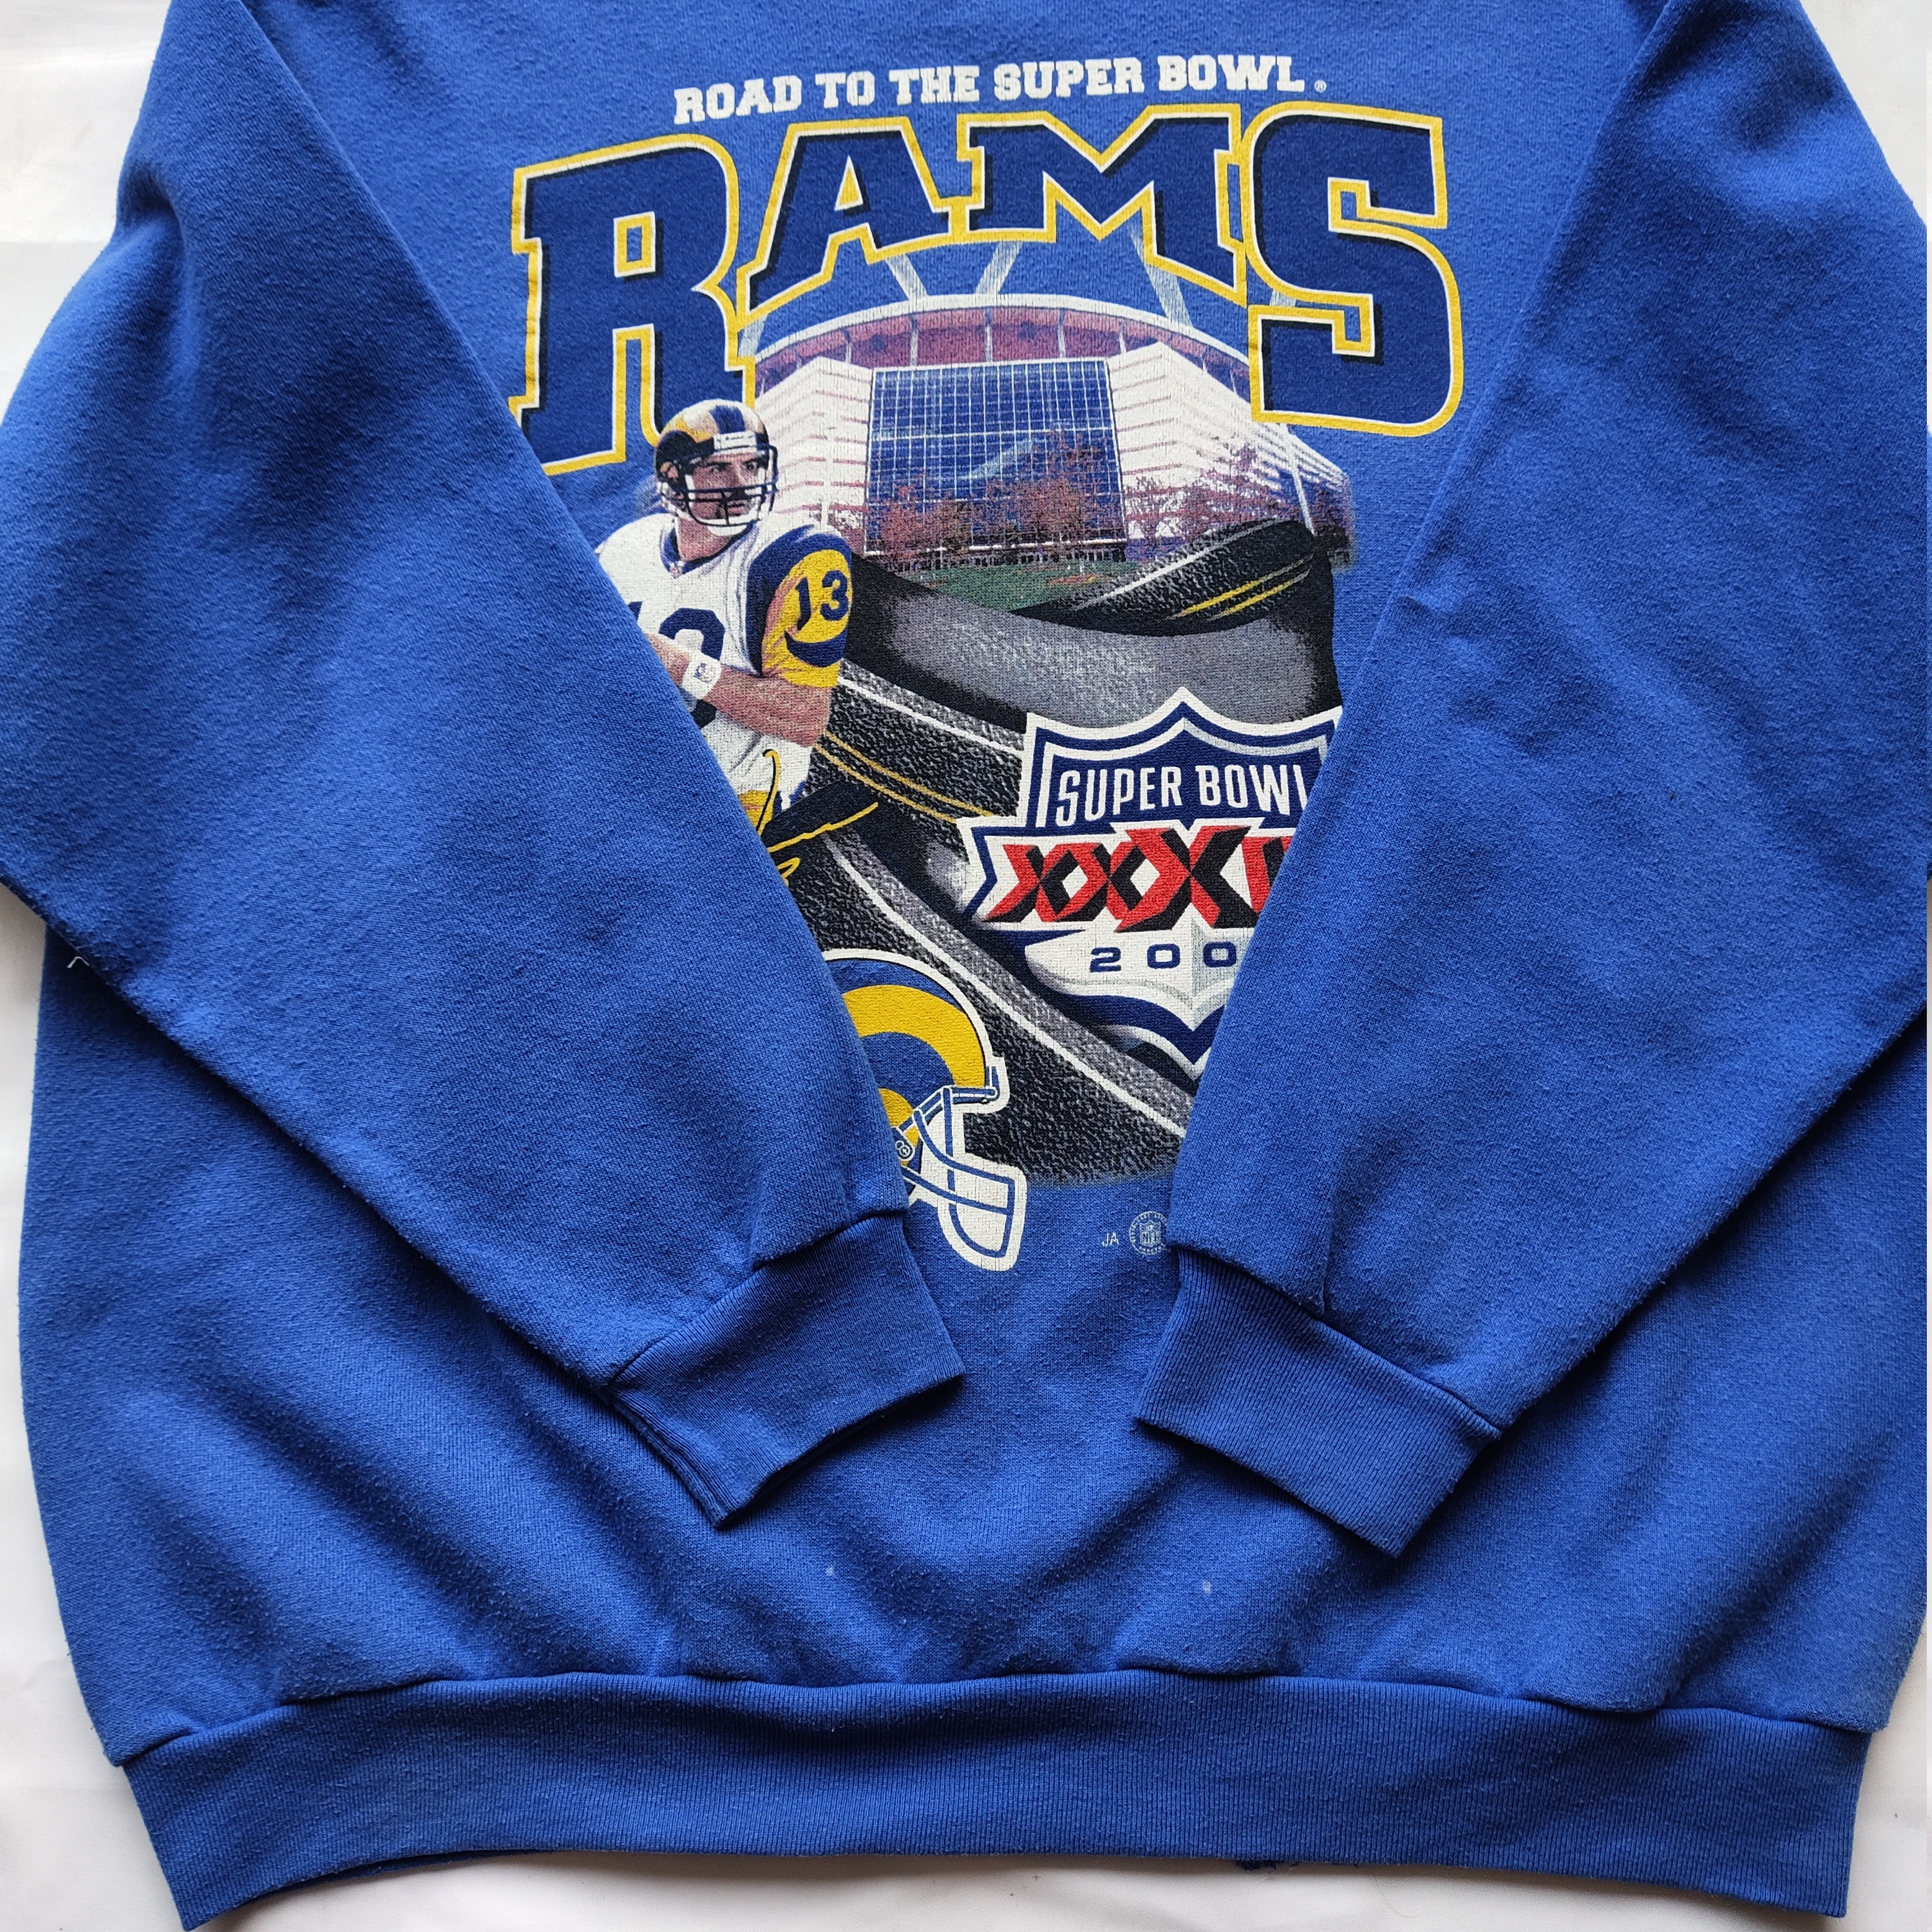 Vintage St. Louis Rams Sweatshirt –